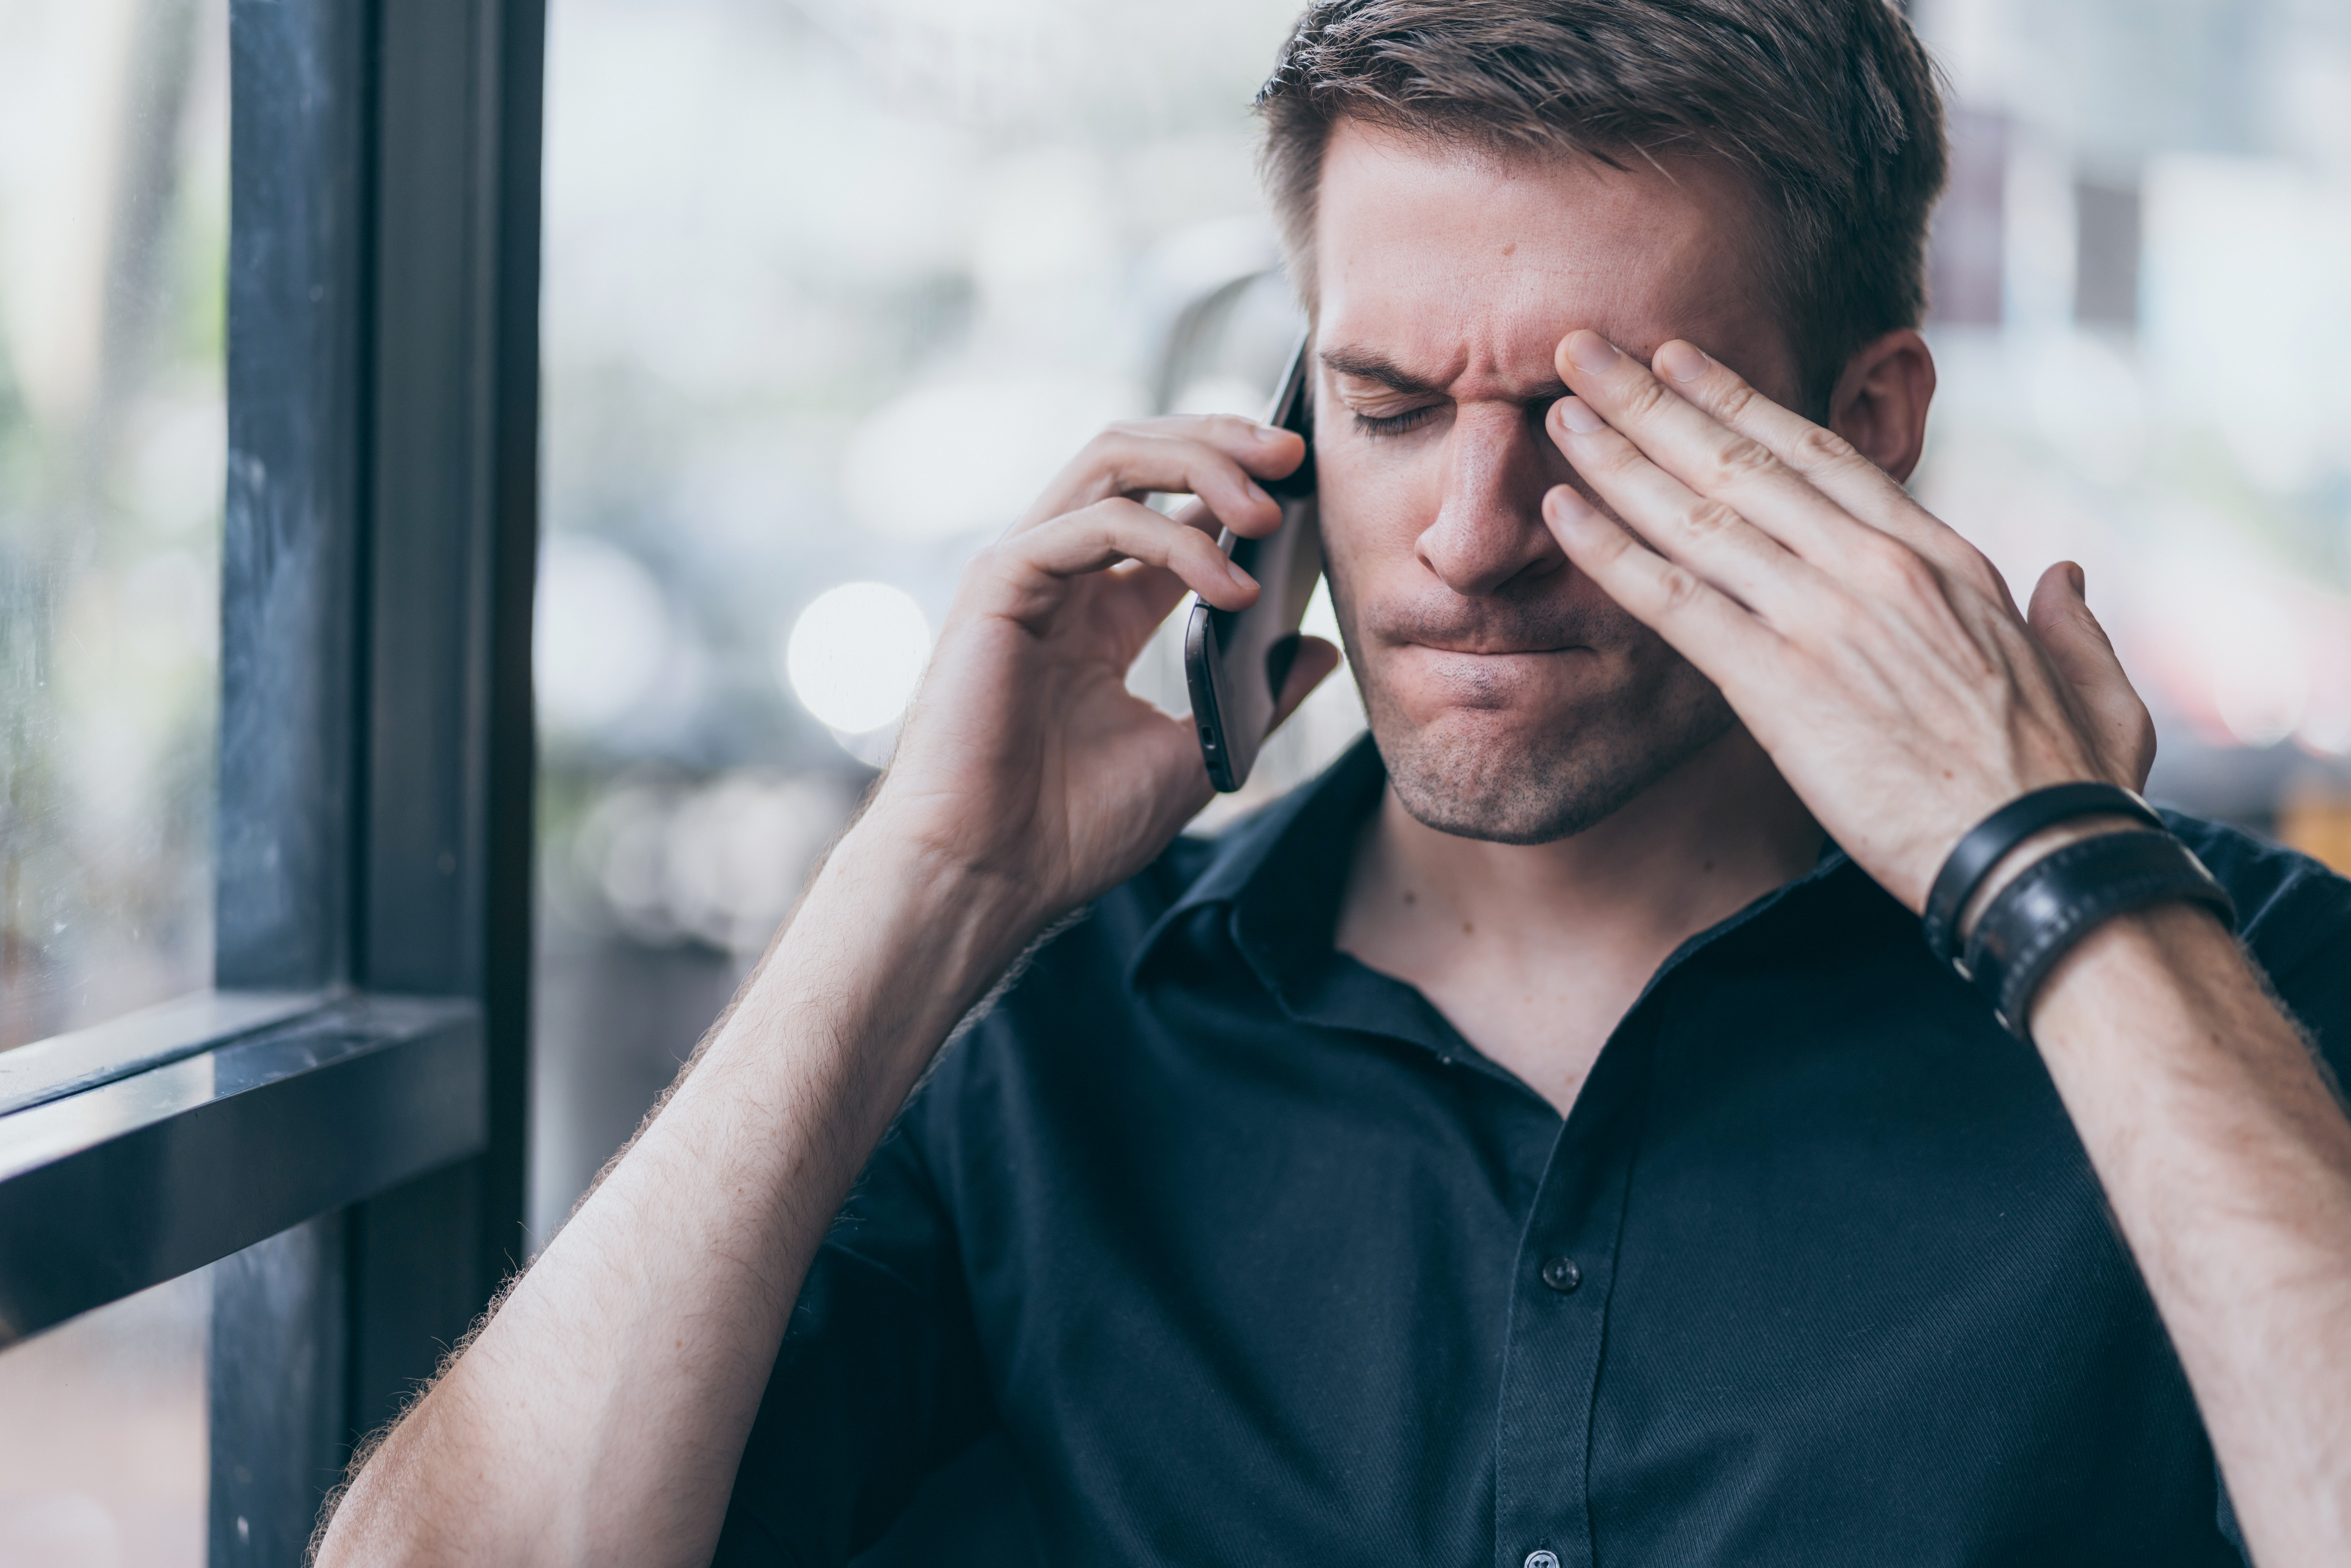 Ein gestresster Mann beim Telefonieren | Quelle: Shutterstock